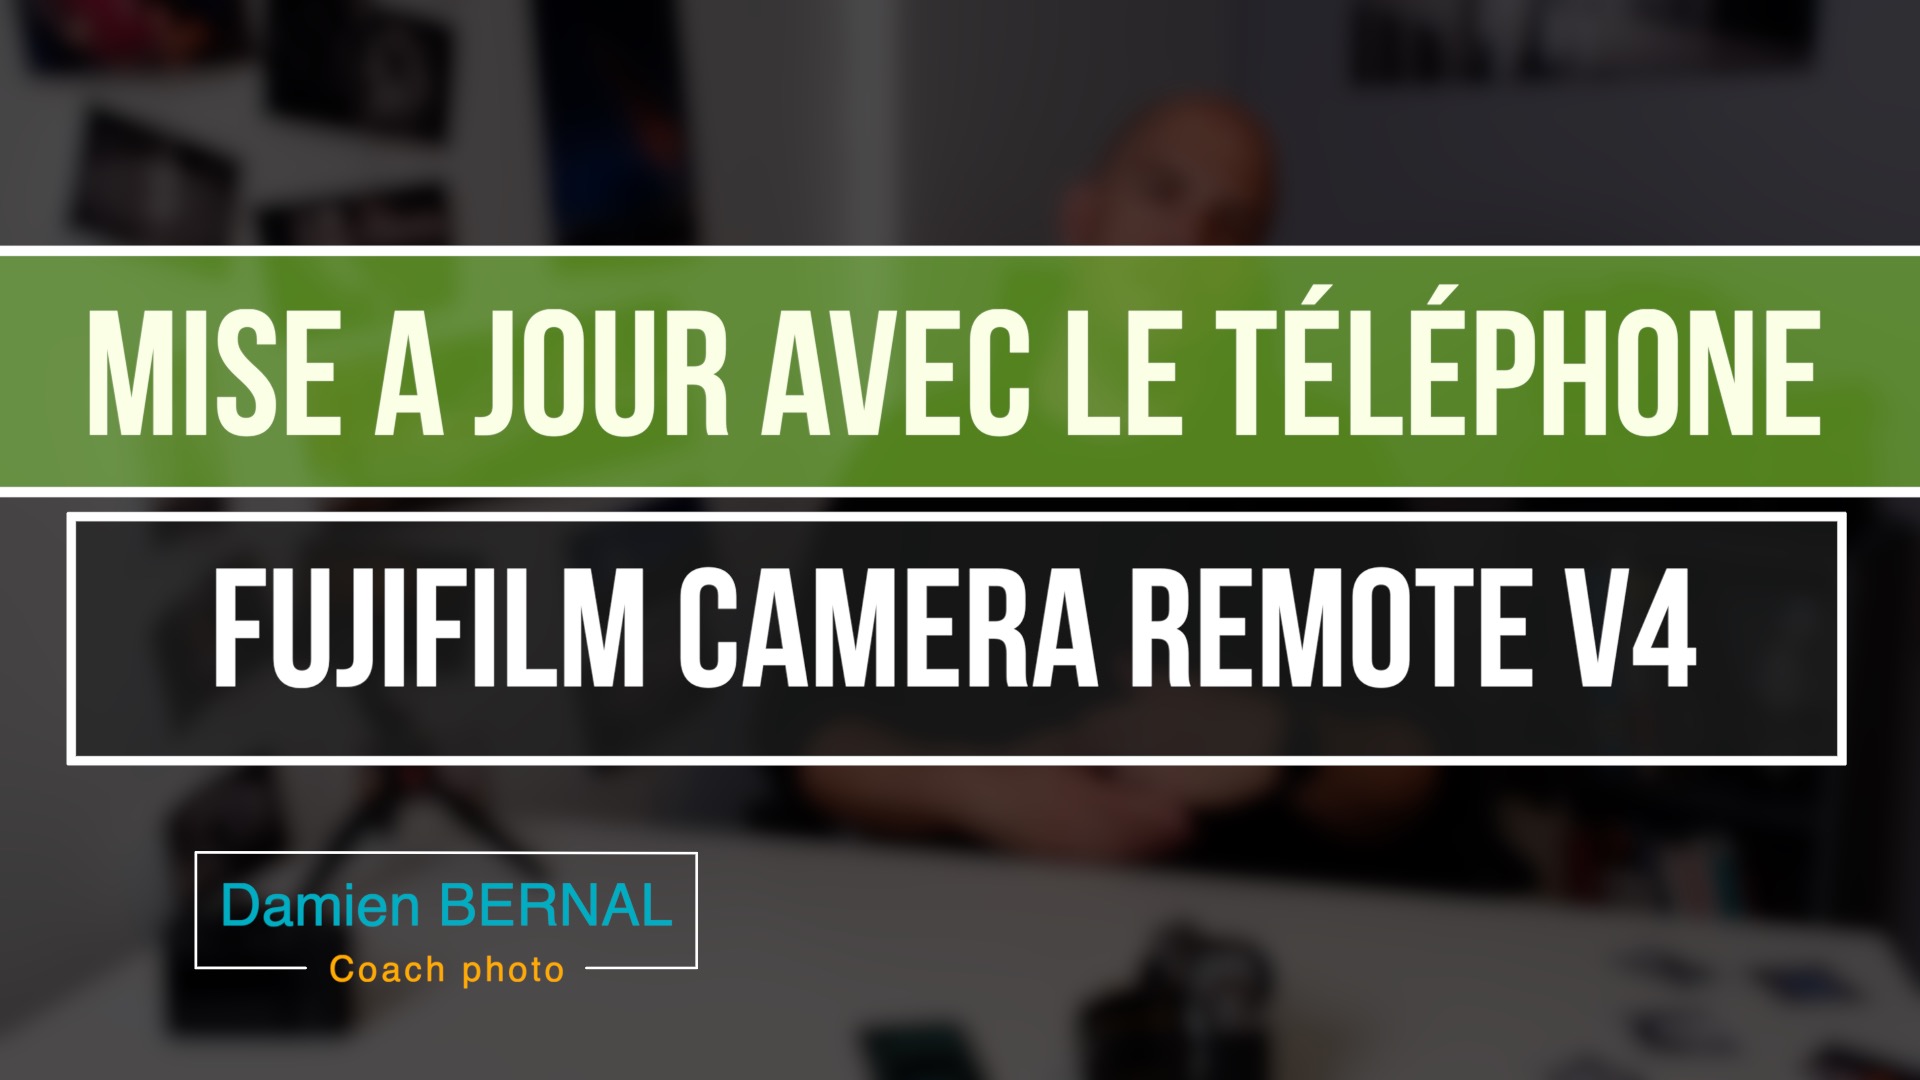 Fujifilm camera remote 4